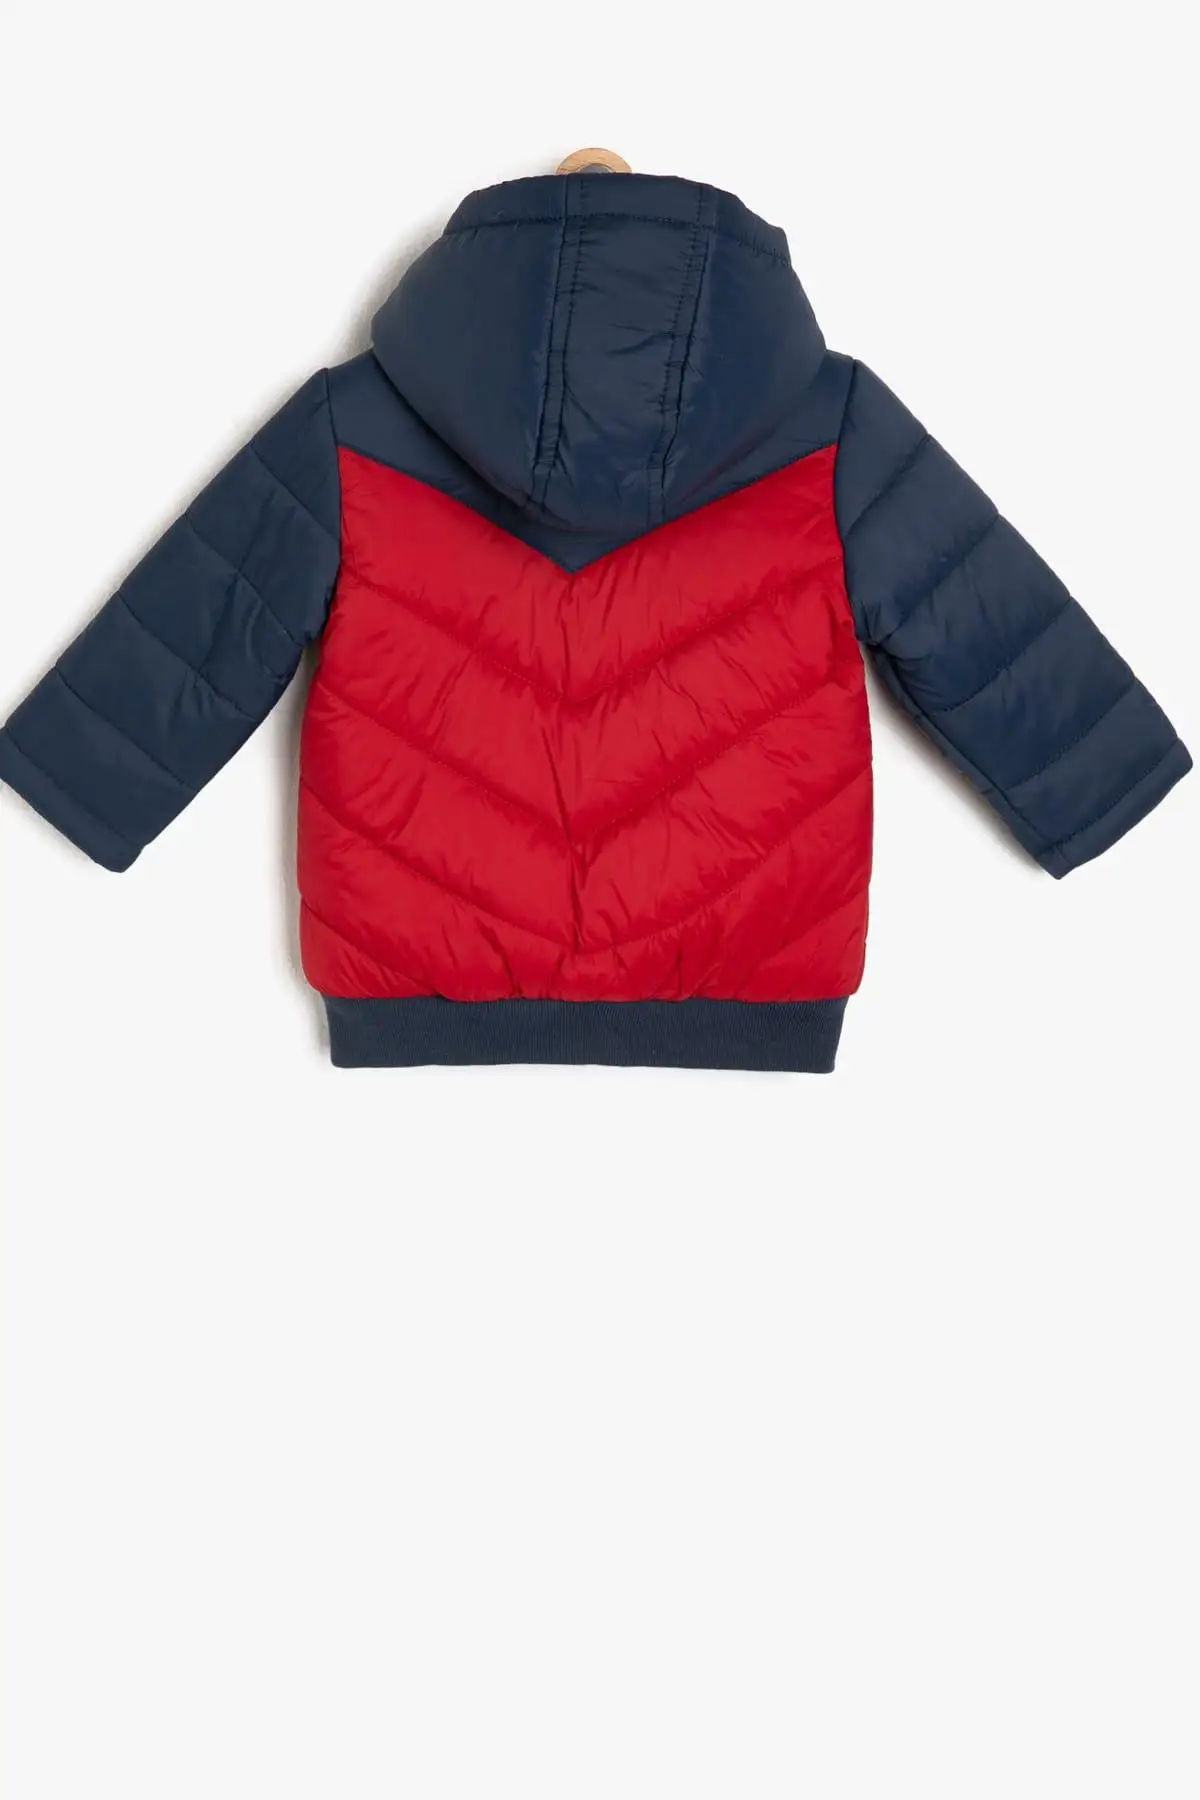 Koton/детское красное пальто для мальчиков